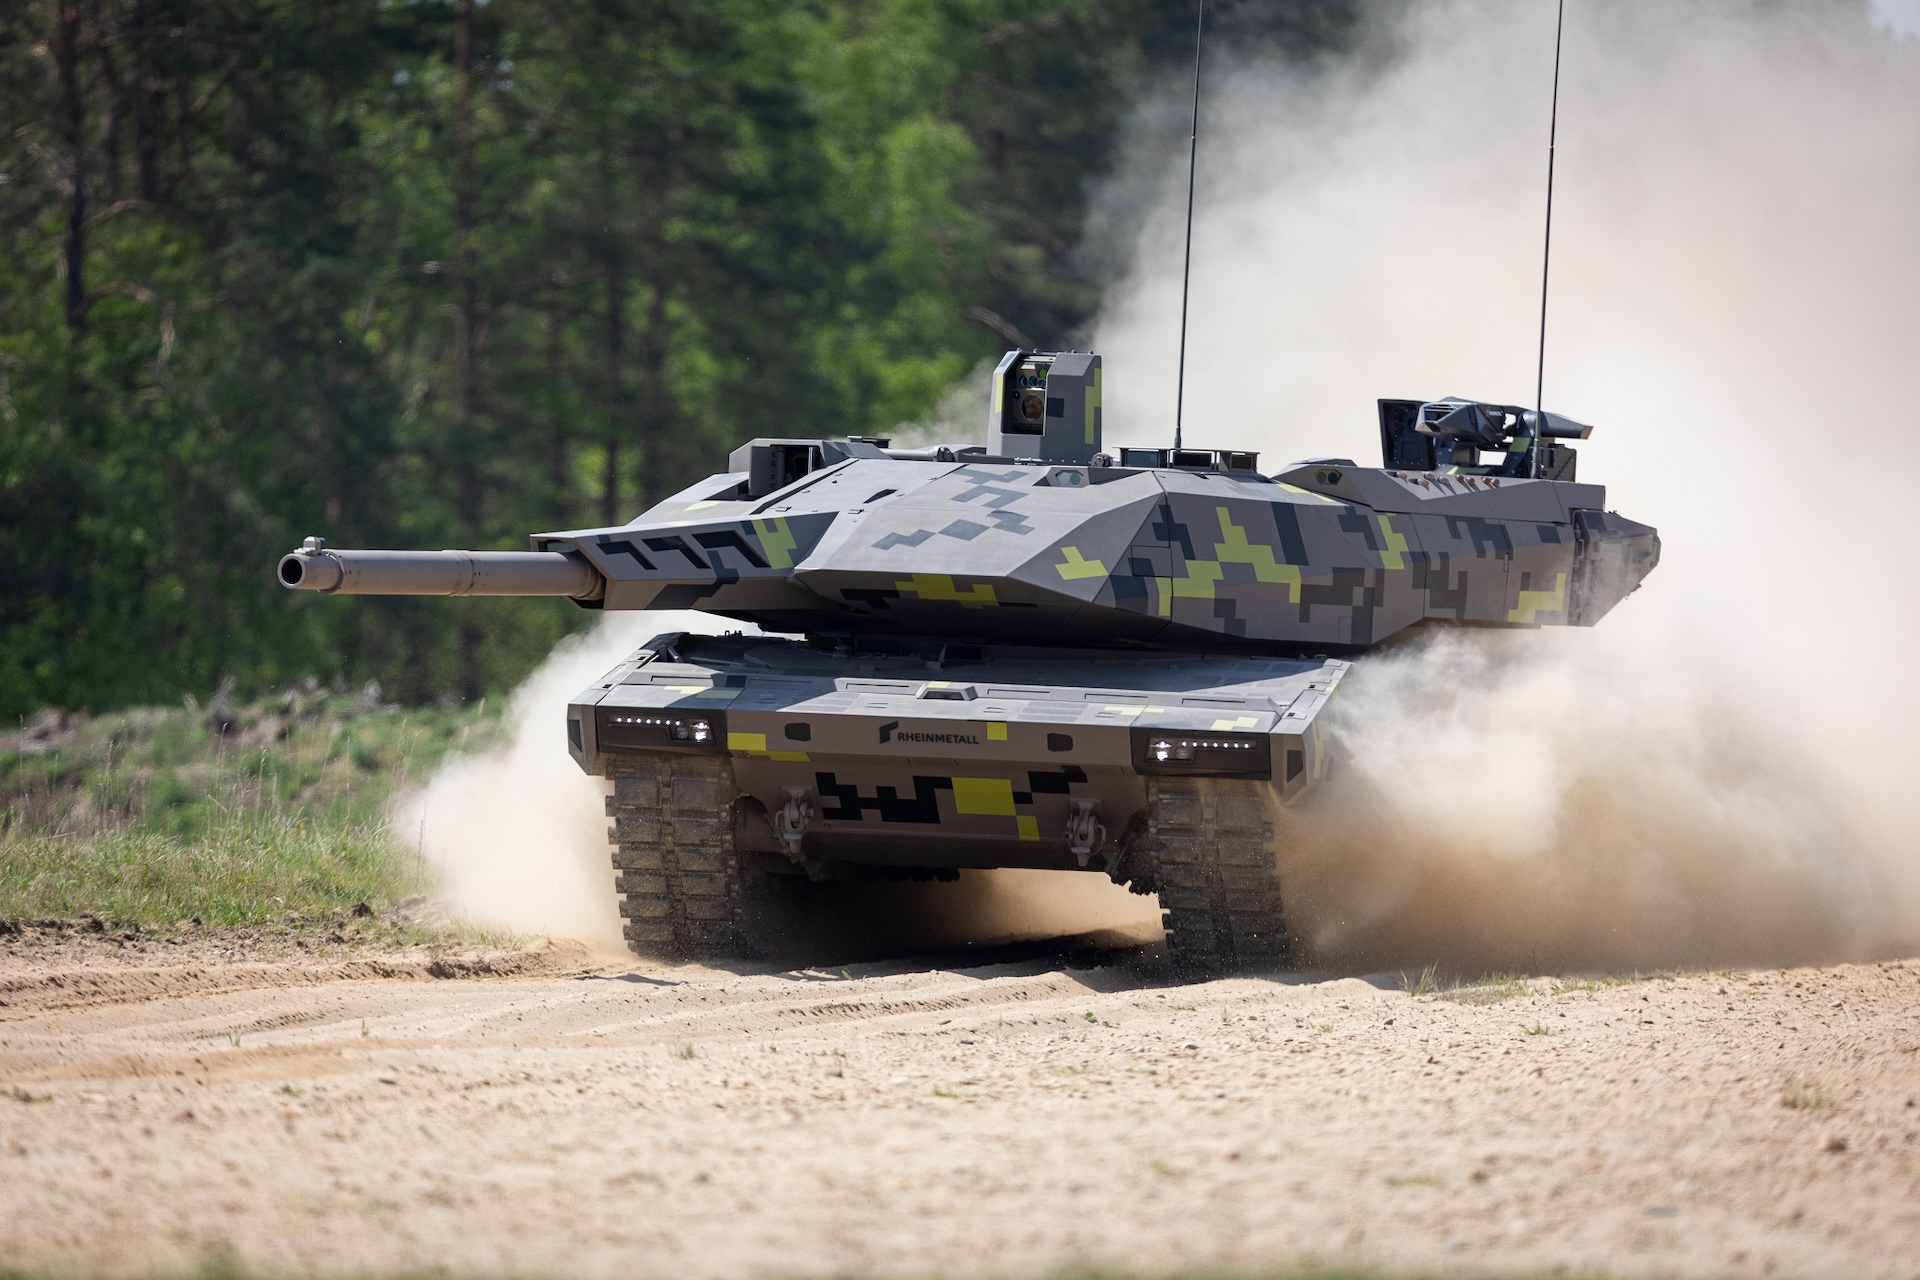 Der Entwicklungsauftrag für den Kampfpanzer Panther KF51 von Rheinmetall wurde jetzt durch Ungarn unterzeichnet.